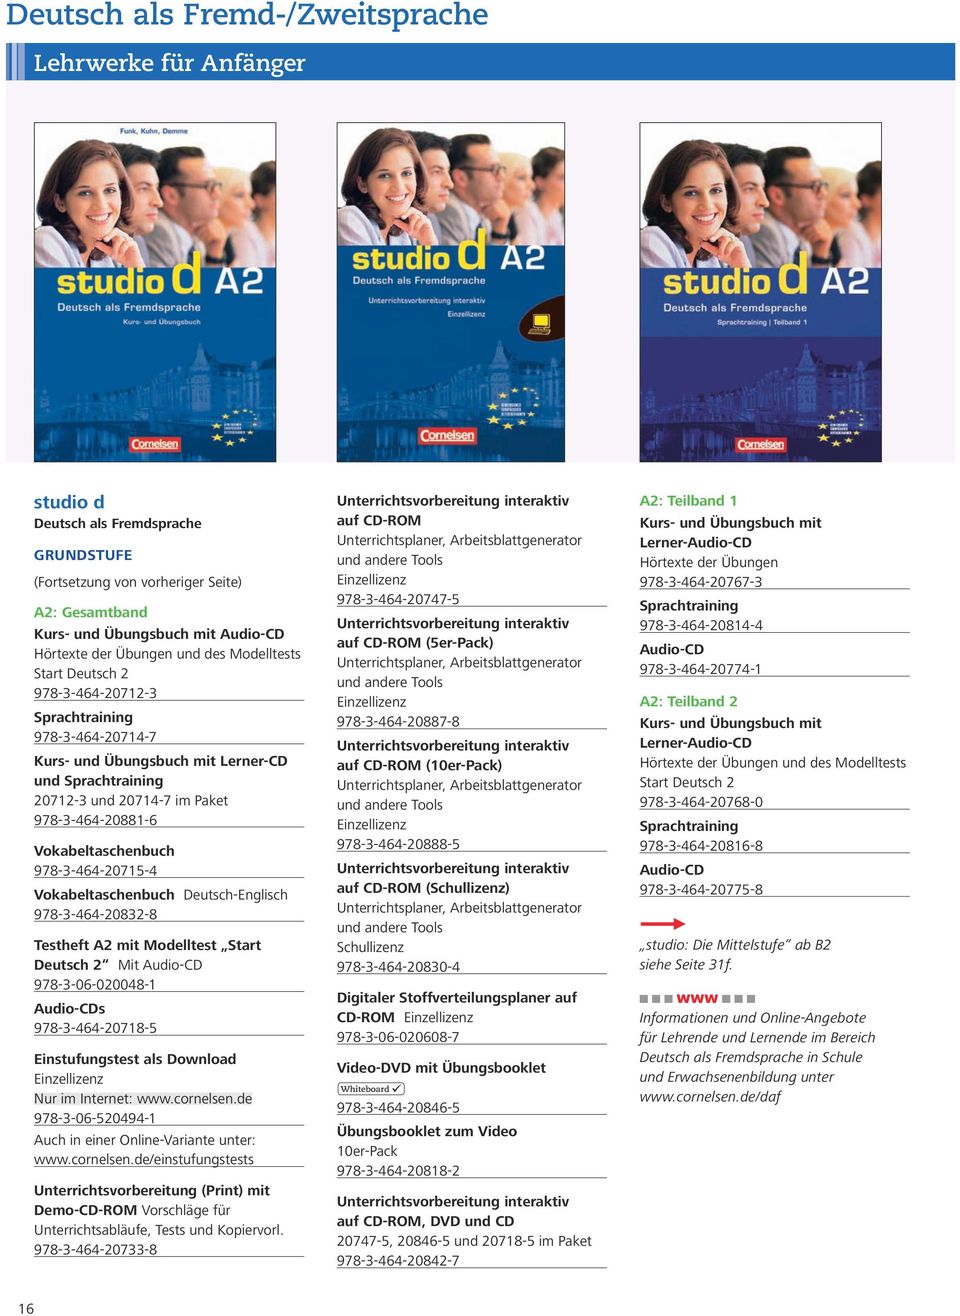 Vokabeltaschenbuch Deutsch-Englisch 978-3-464-20832-8 Testheft A2 mit Modelltest Start Deutsch 2 Mit Audio-CD 978-3-06-020048-1 Audio-CDs 978-3-464-20718-5 Einstufungstest als Download